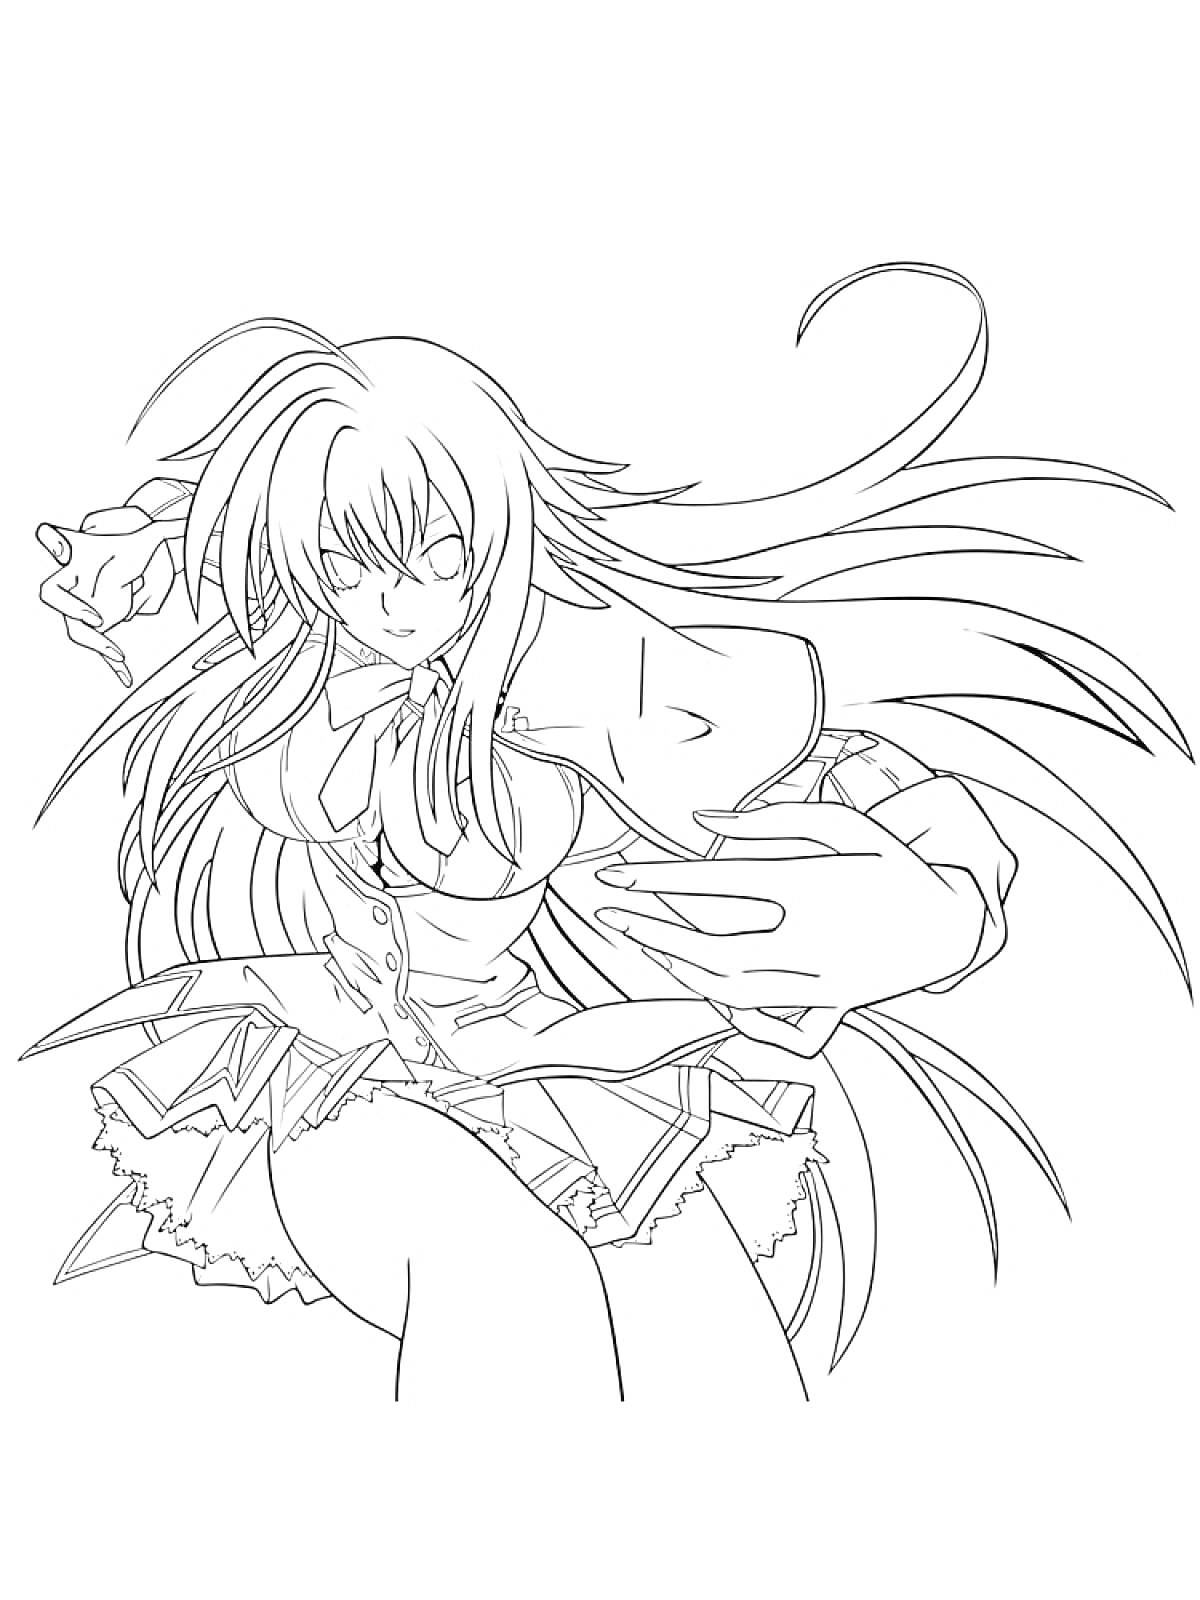 Раскраска Аниме девушка с длинными волосами в школьной форме, воинственная поза